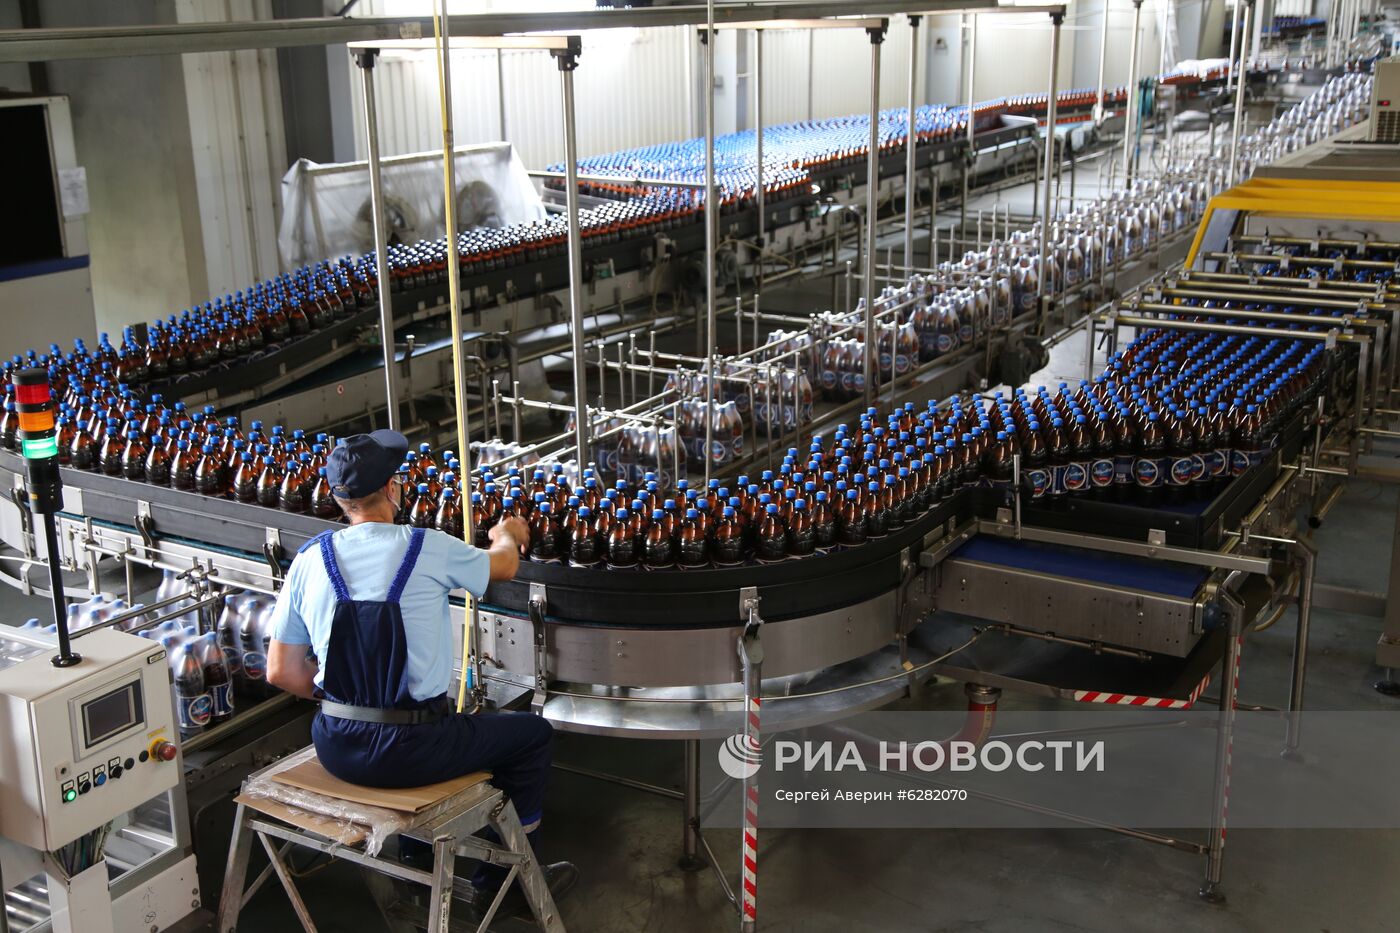 Донецкий пивоваренный завод